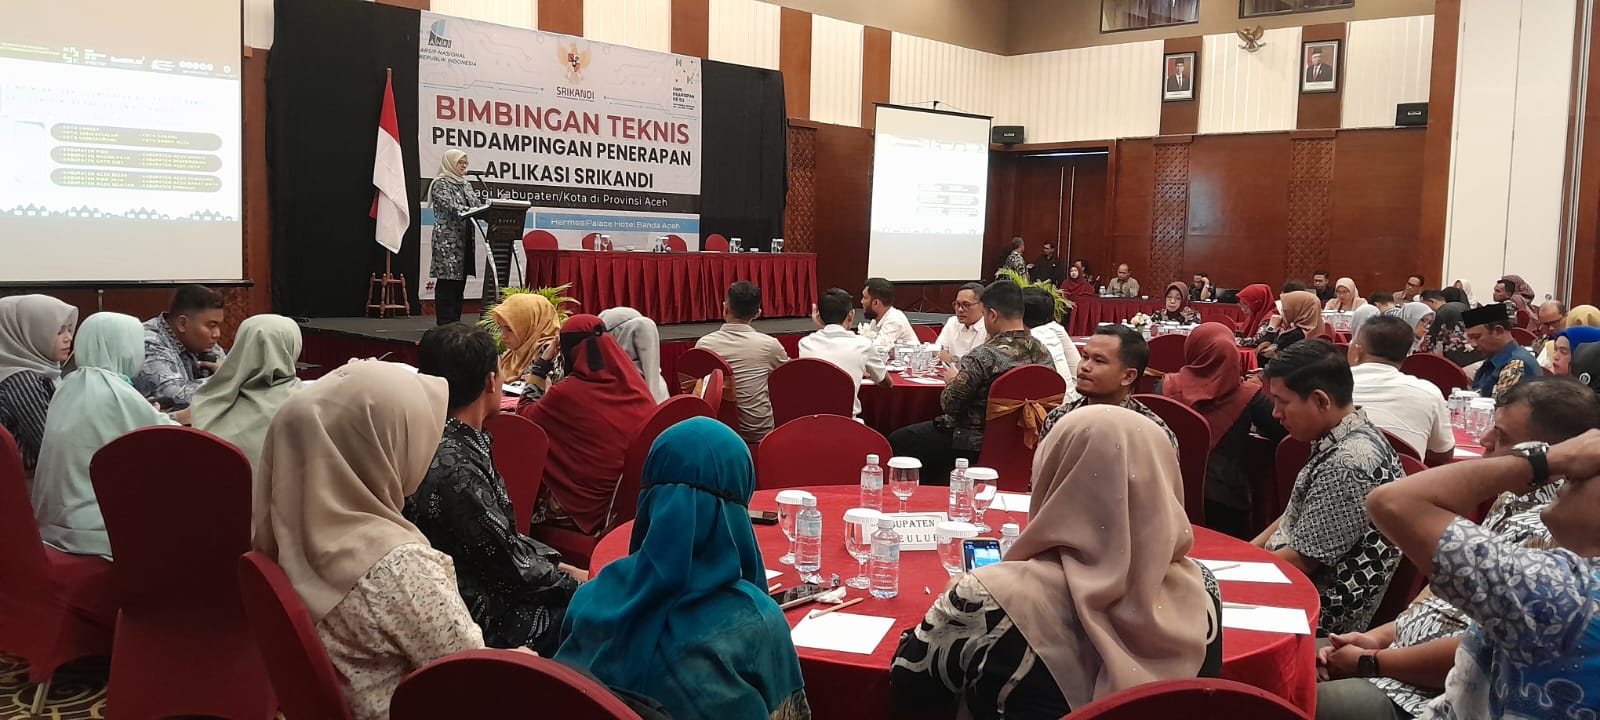 Bimtek Pendampingan Penerapan Aplikasi SRIKANDI di Kota Banda Aceh